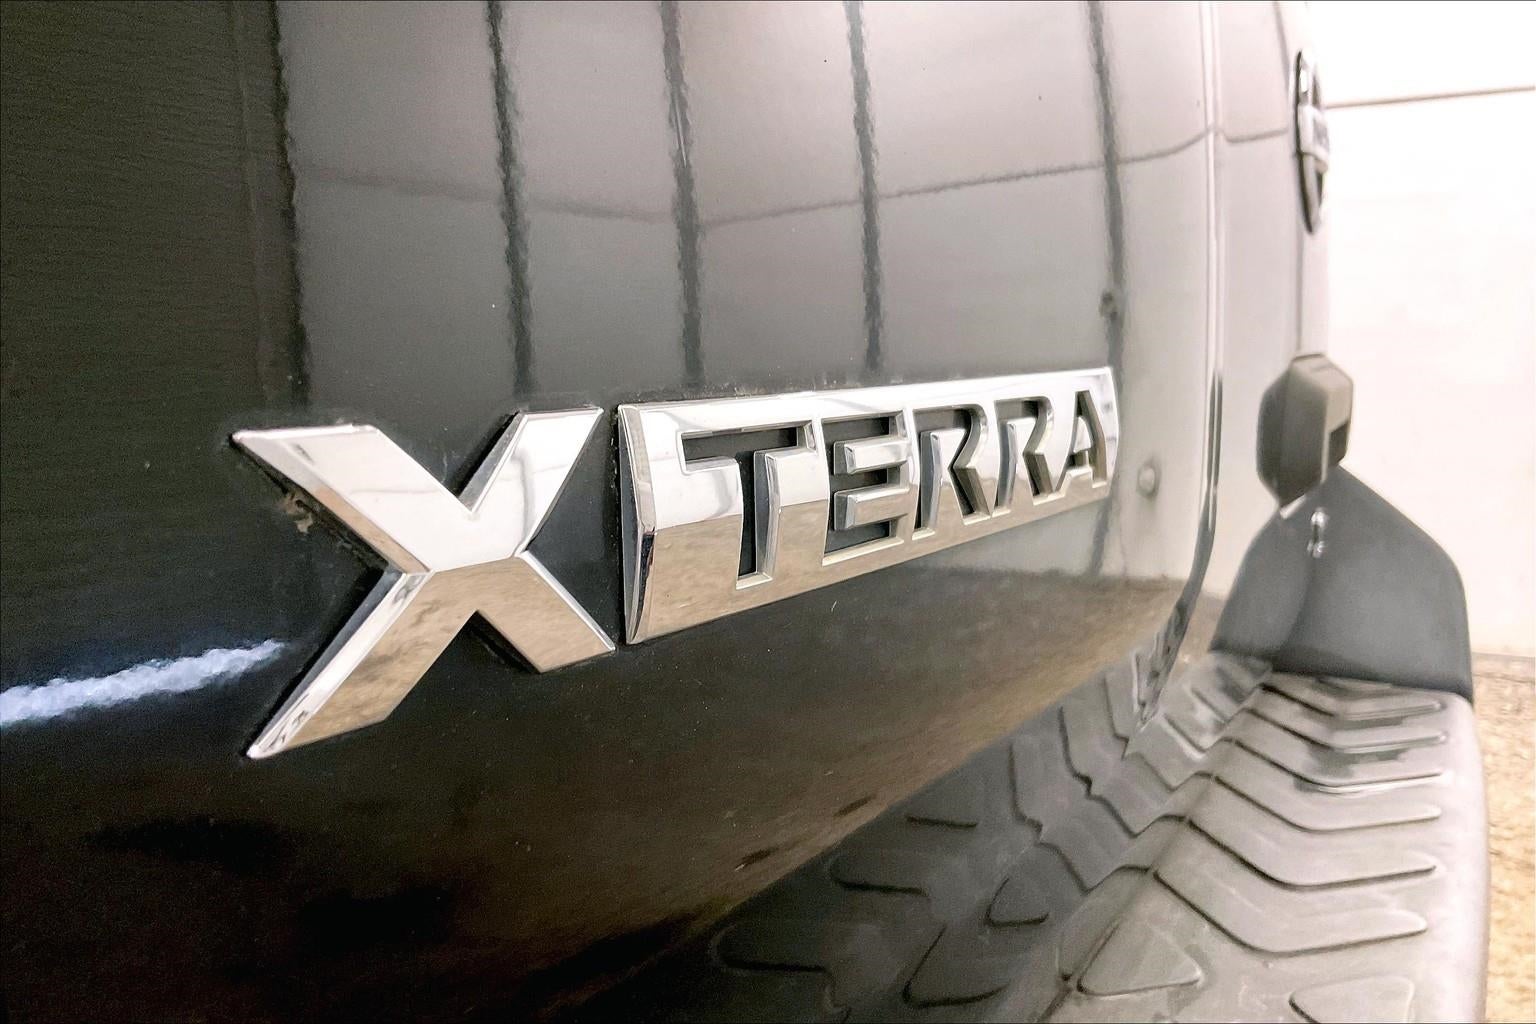 2007 Nissan Xterra SE